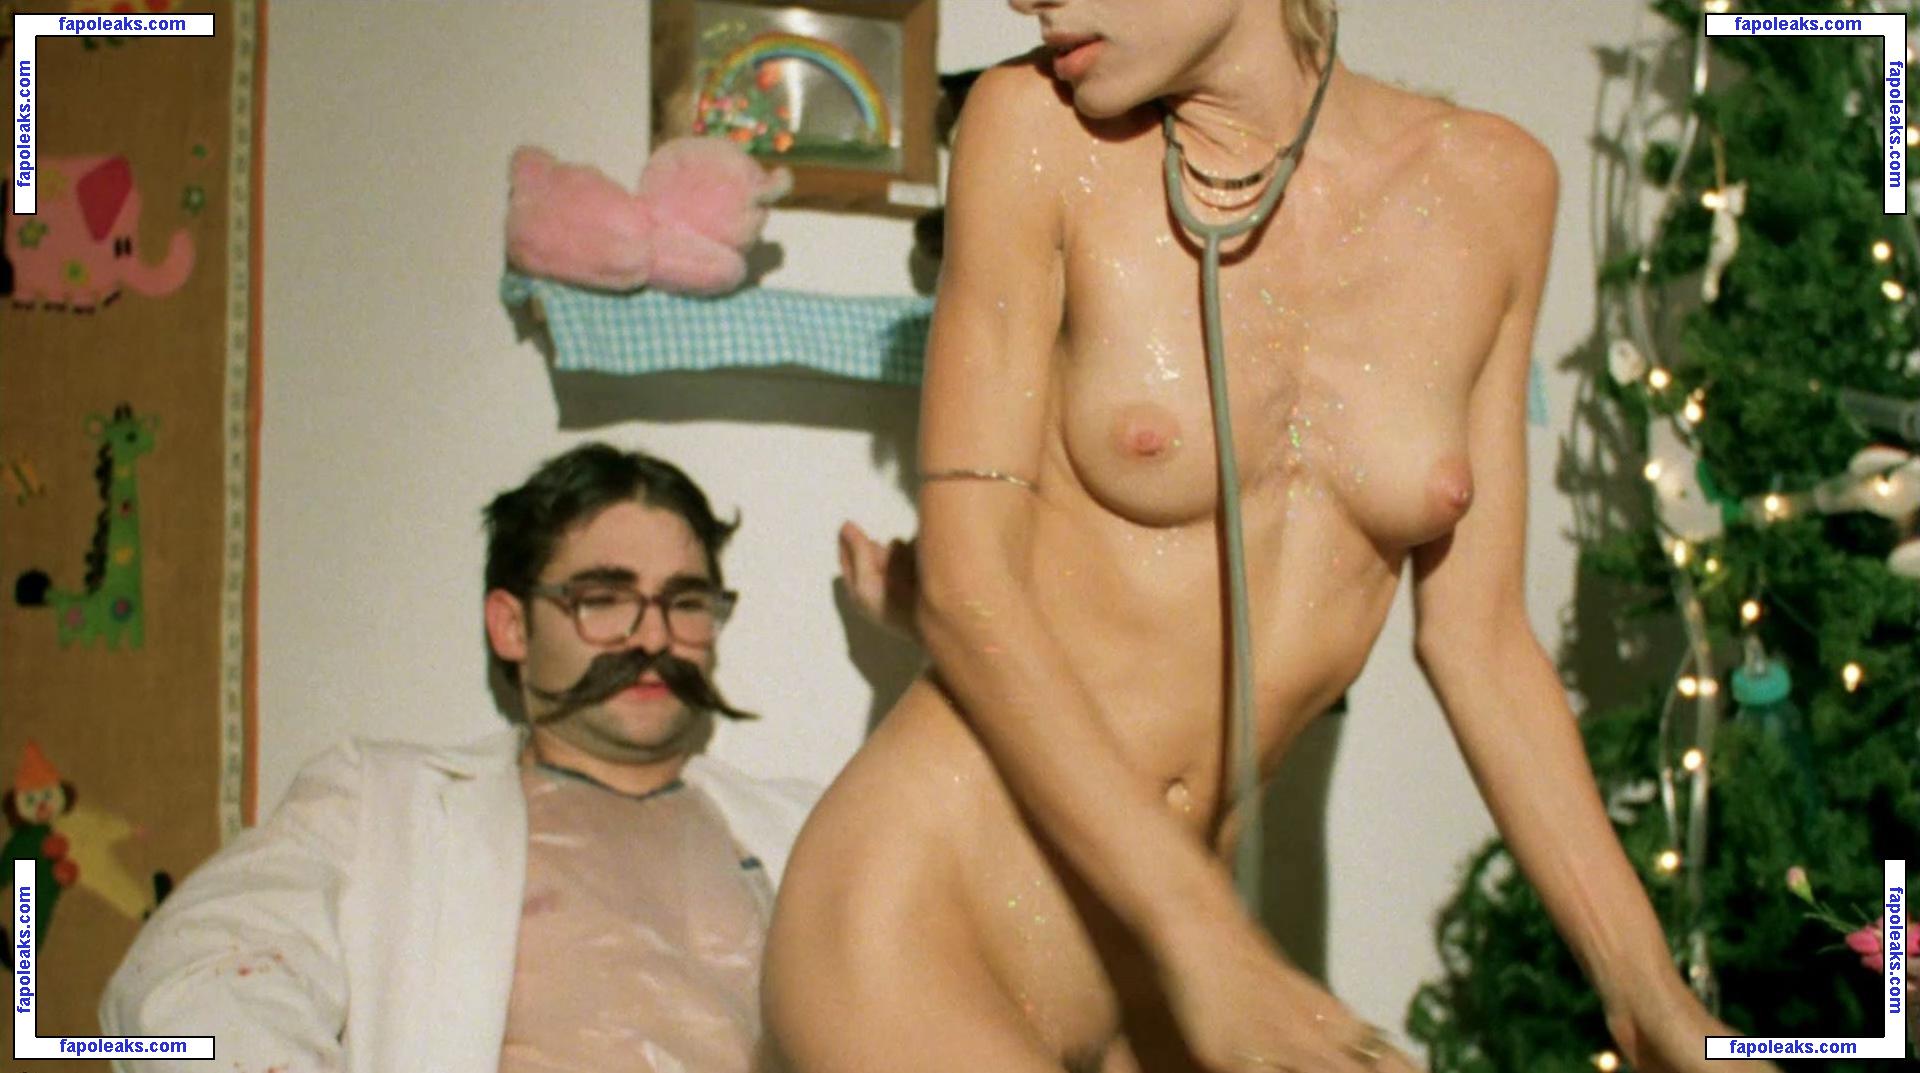 Celeste Octavia nude photo #0007 from OnlyFans